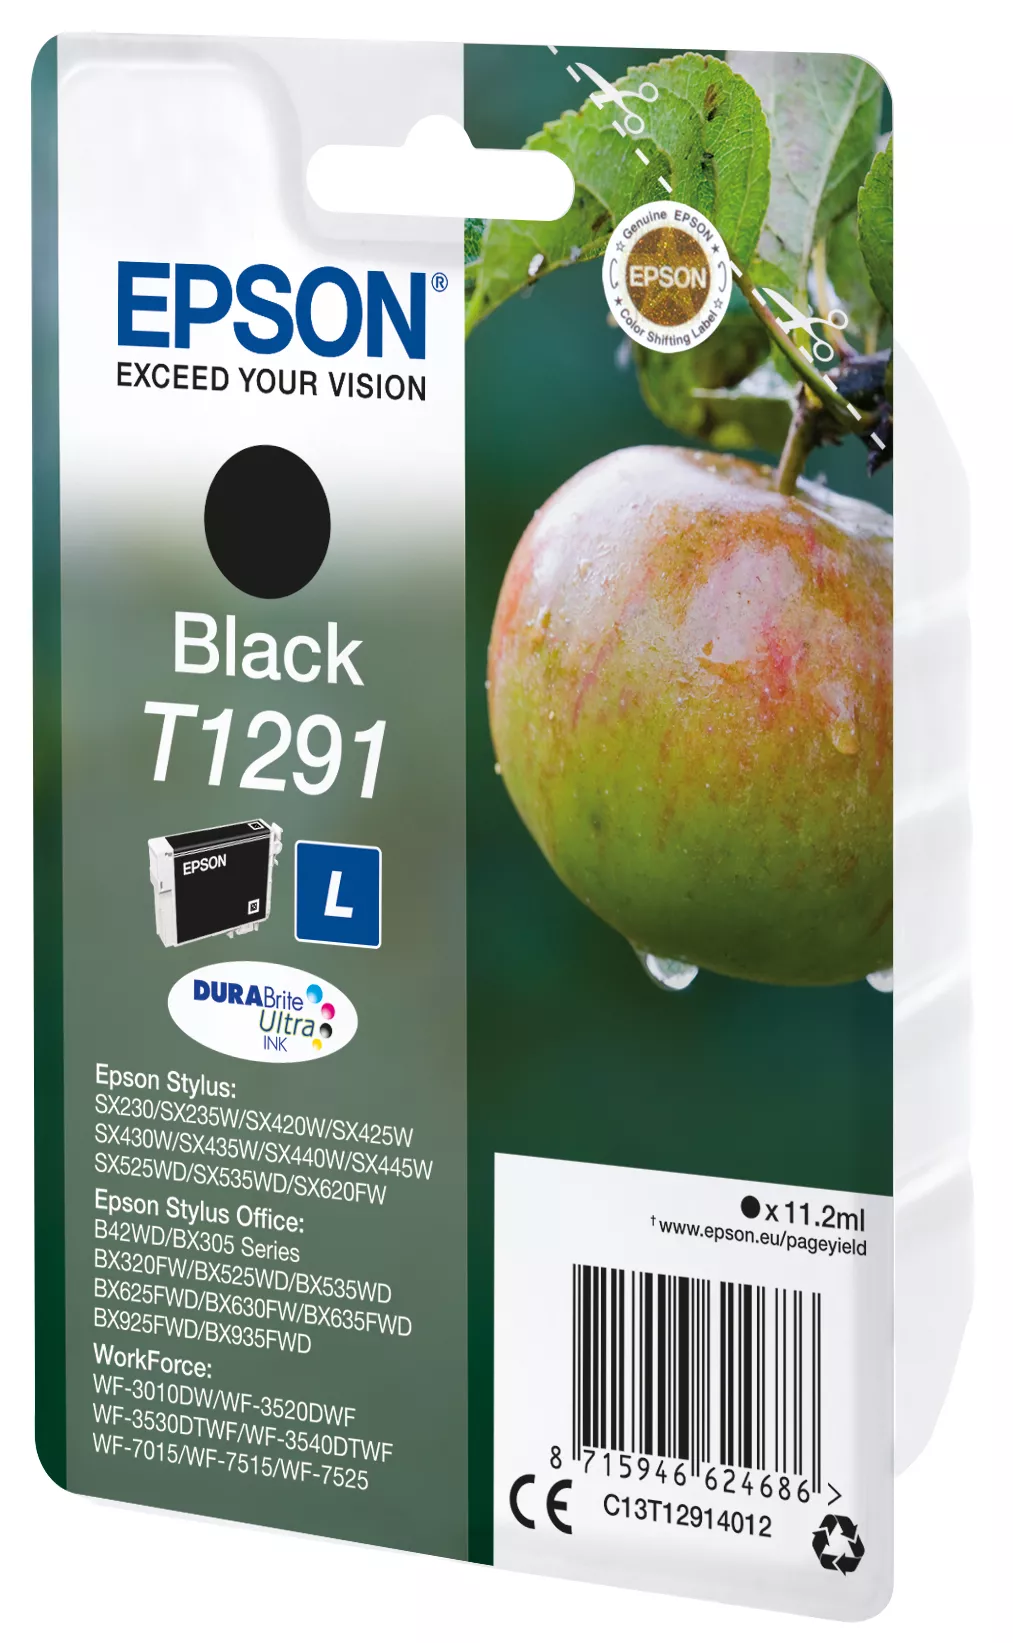 Vente EPSON T1291 cartouche d encre noir haute capacité Epson au meilleur prix - visuel 2